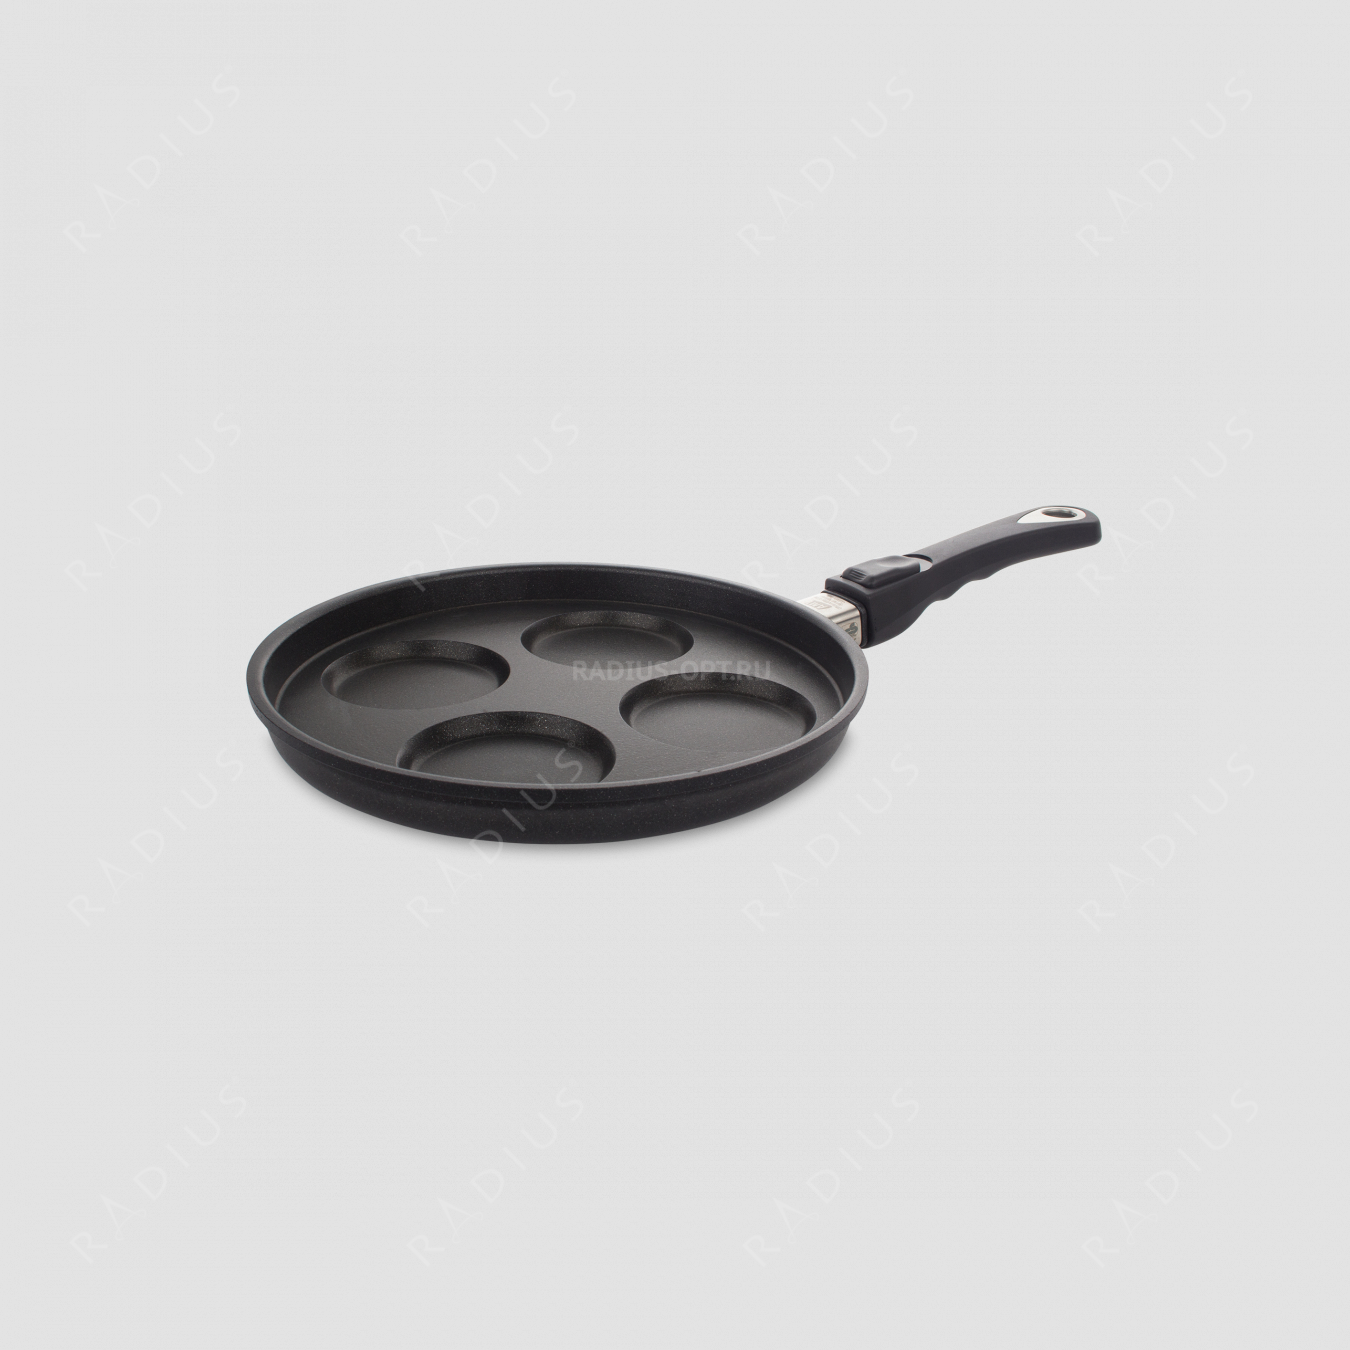 Сковорода для оладий, алюмин. с антипр.покр., 26 см, съемная ручка, серия Frying Pans, AMT, Германия